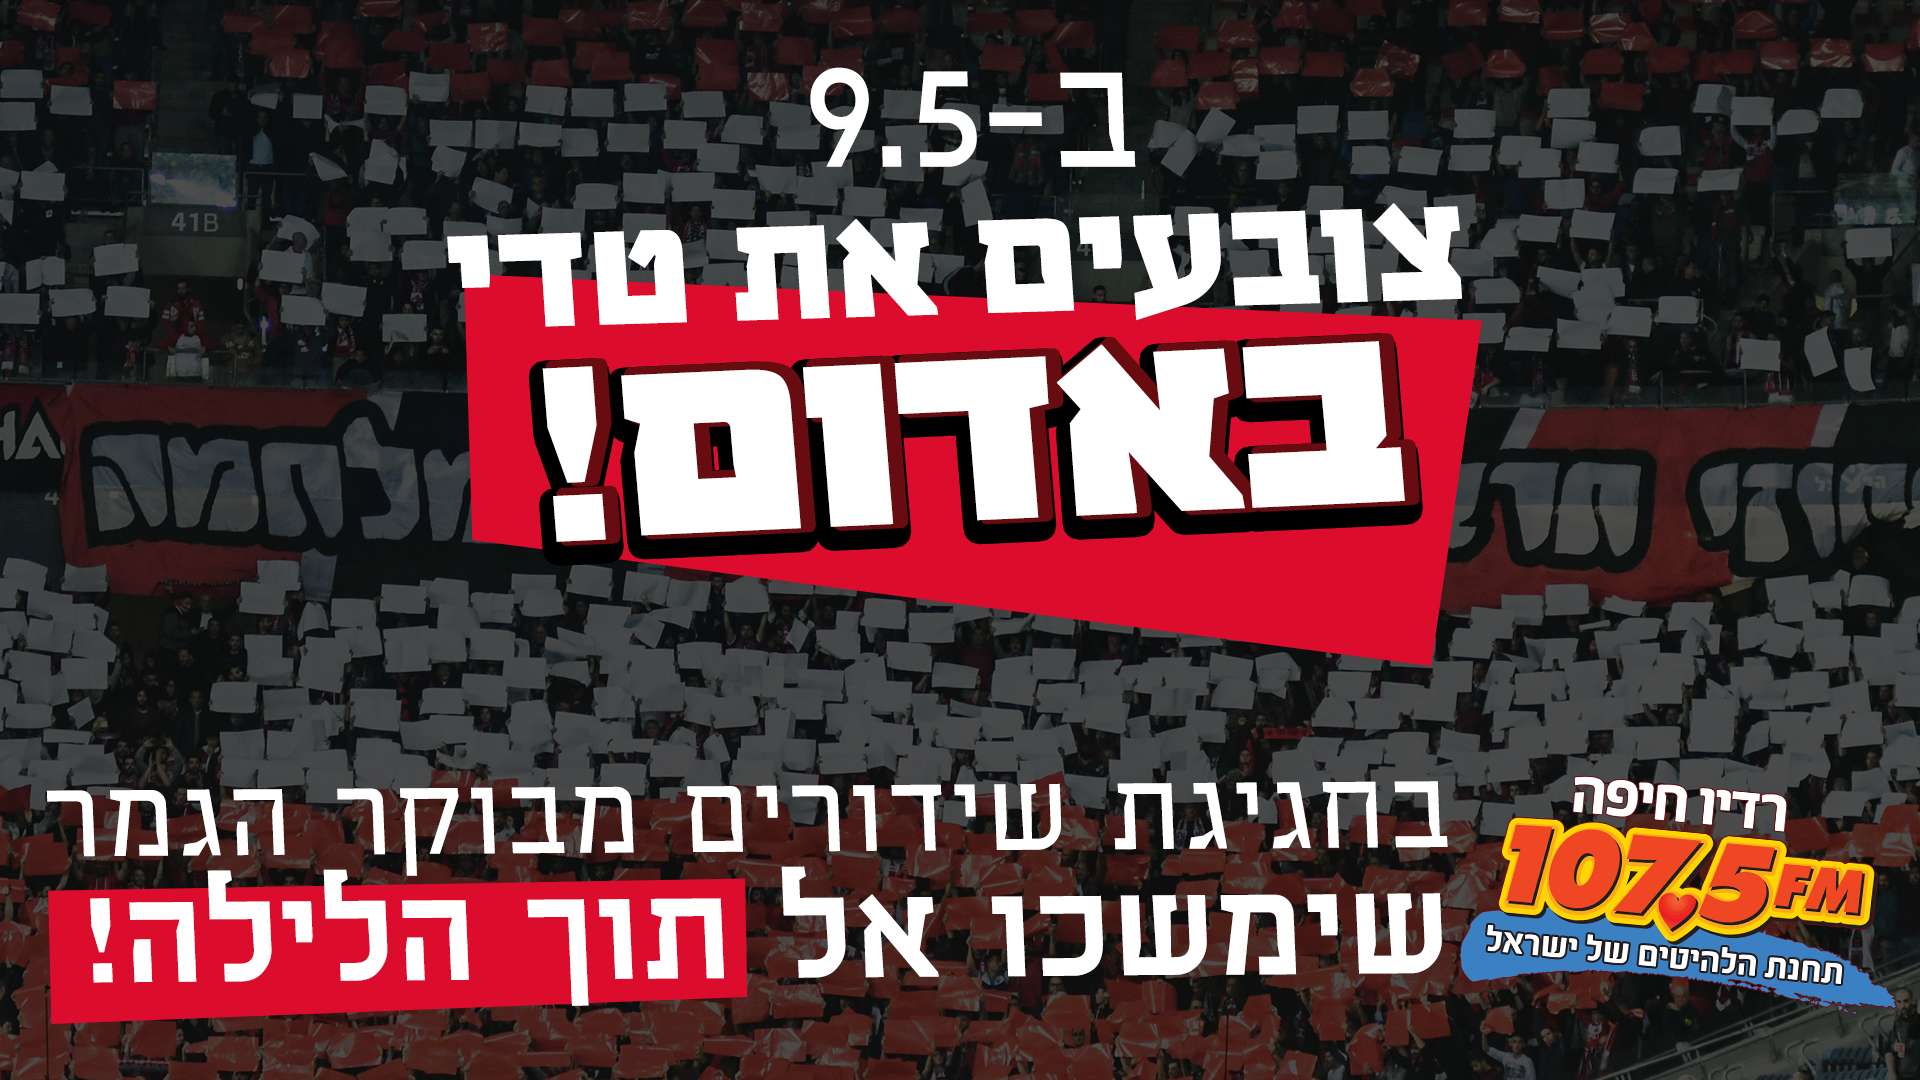 רדיו חיפה מלווה את הפועל חיפה בחגיגת שידורים